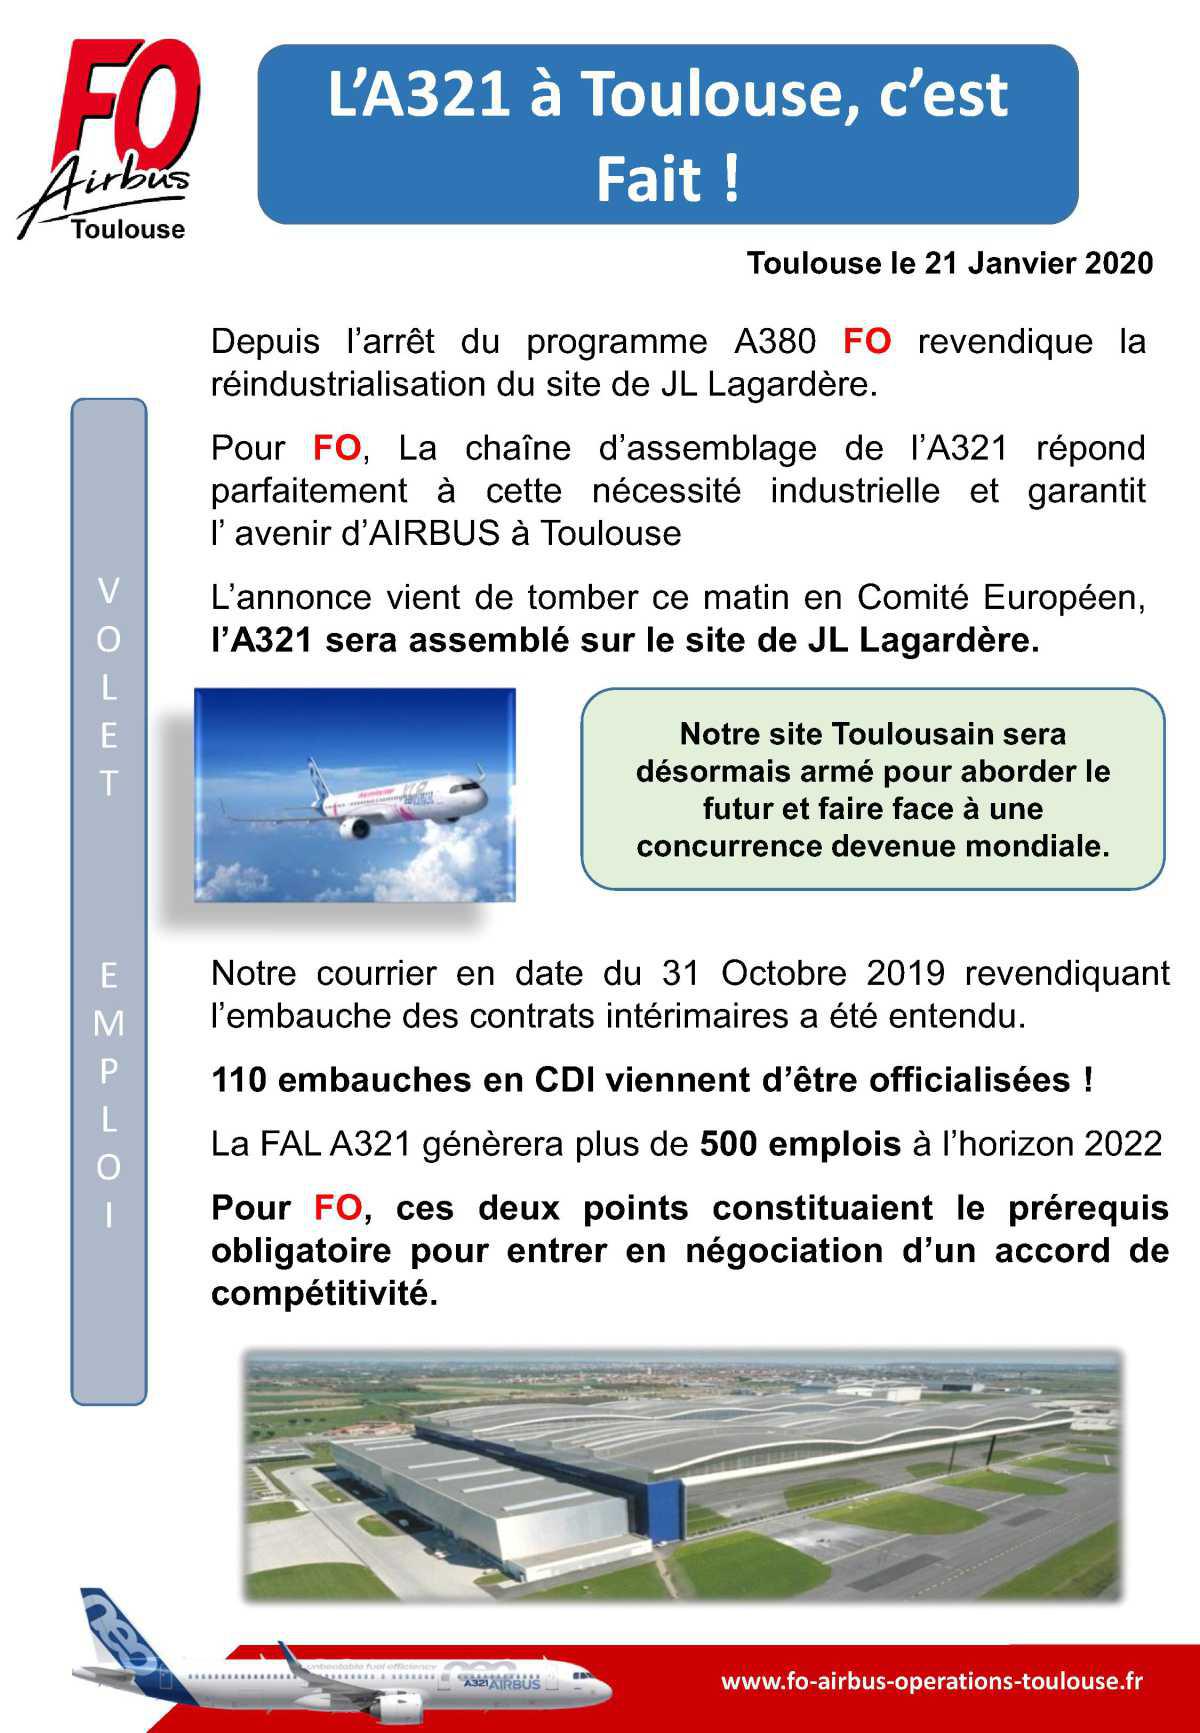 L'A321 à Toulouse, c'est Fait!